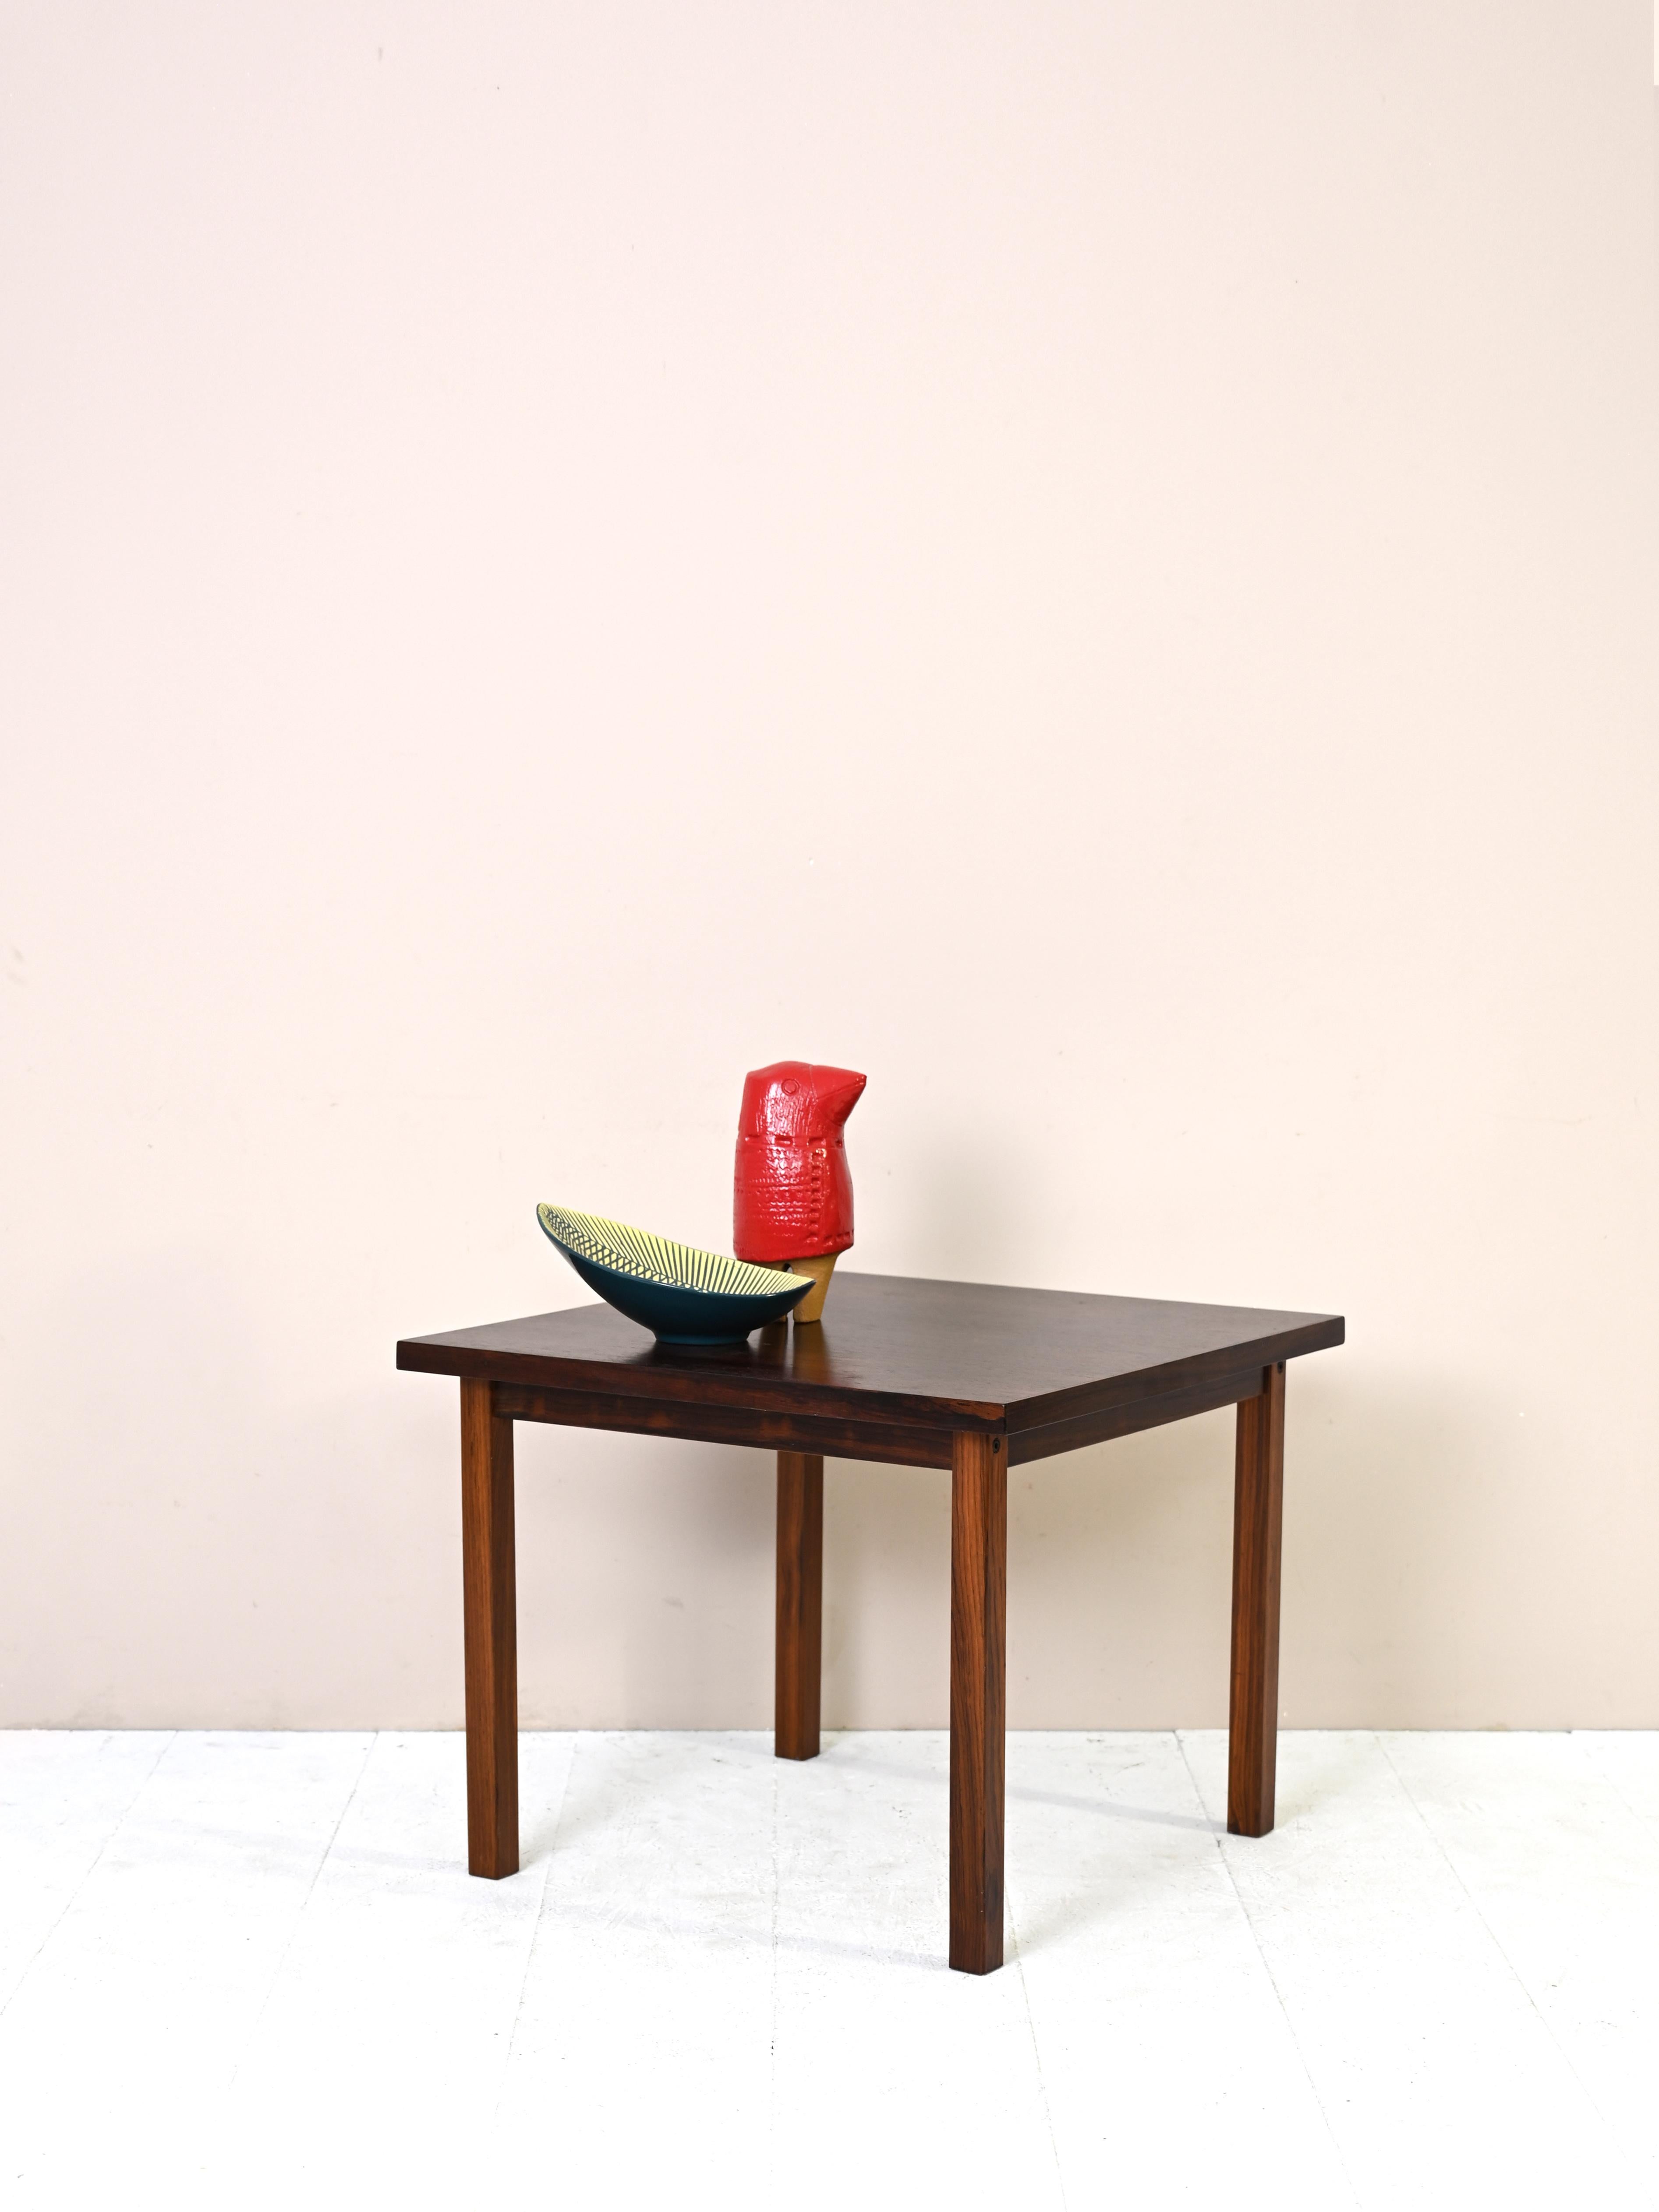 Table scandinave vintage aux formes simples et minimalistes.
Il présente un plateau carré où ressortent les veines prononcées du bois de palissandre.
Élégant et d'une beauté intemporelle.

Bon état. Une restauration conservatrice avec des